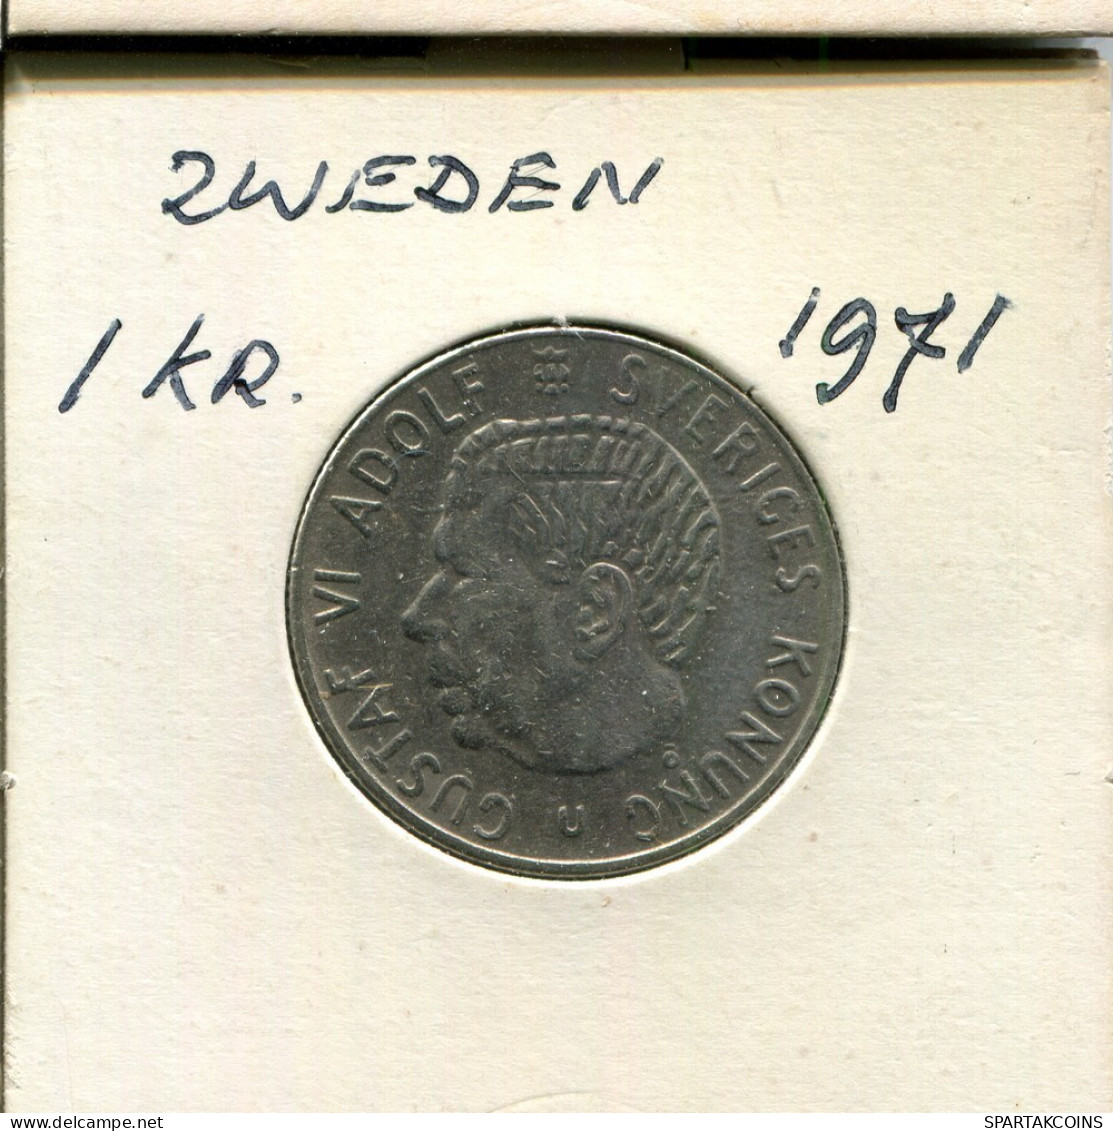 1 KRONE 1971 SCHWEDEN SWEDEN Münze #AR514.D.A - Sweden